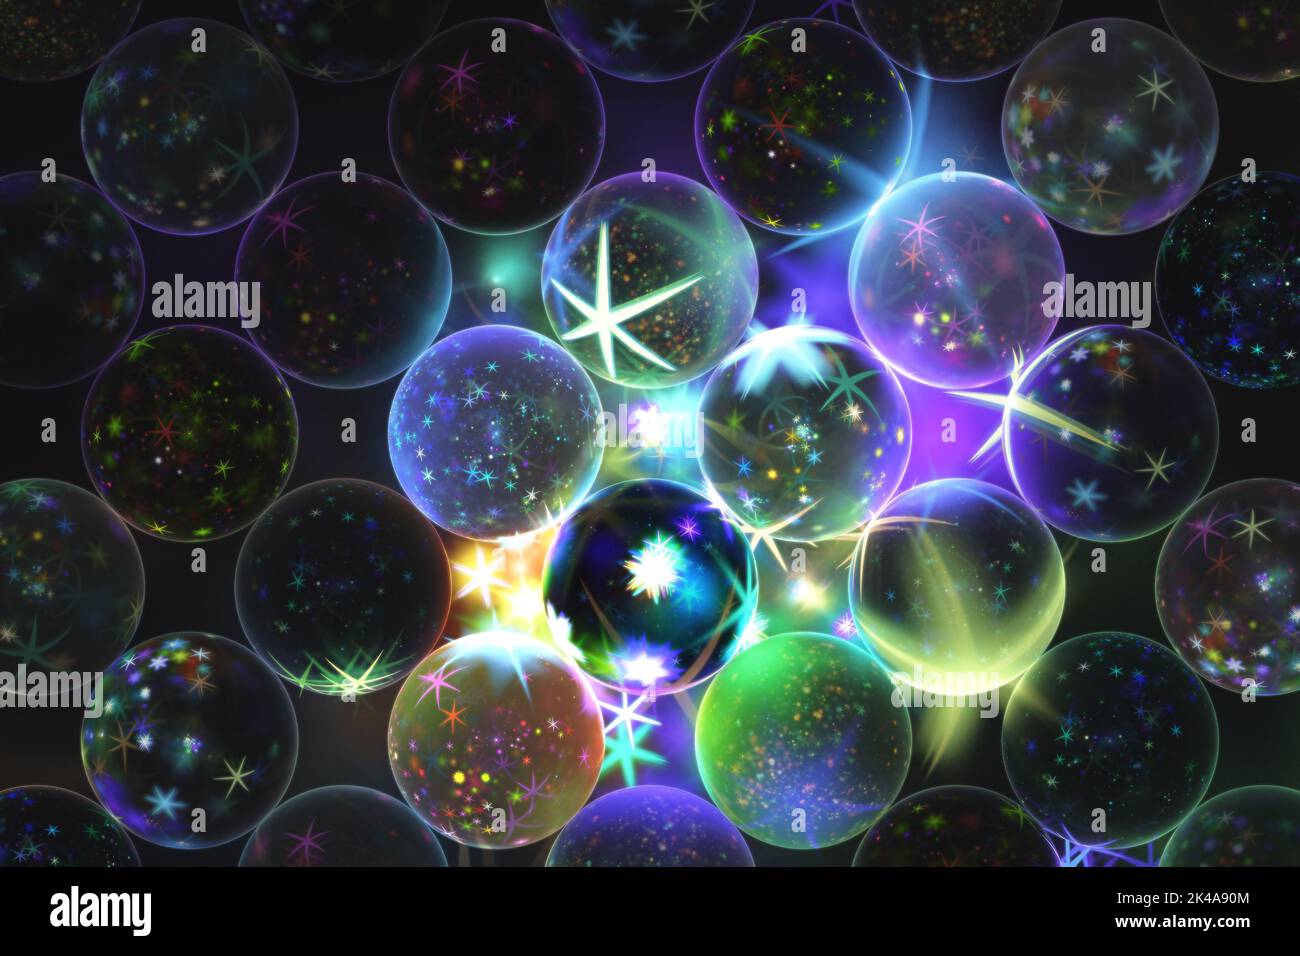 Arrière-plan fractal avec sphères décorées d'étoiles sur fond sombre Banque D'Images